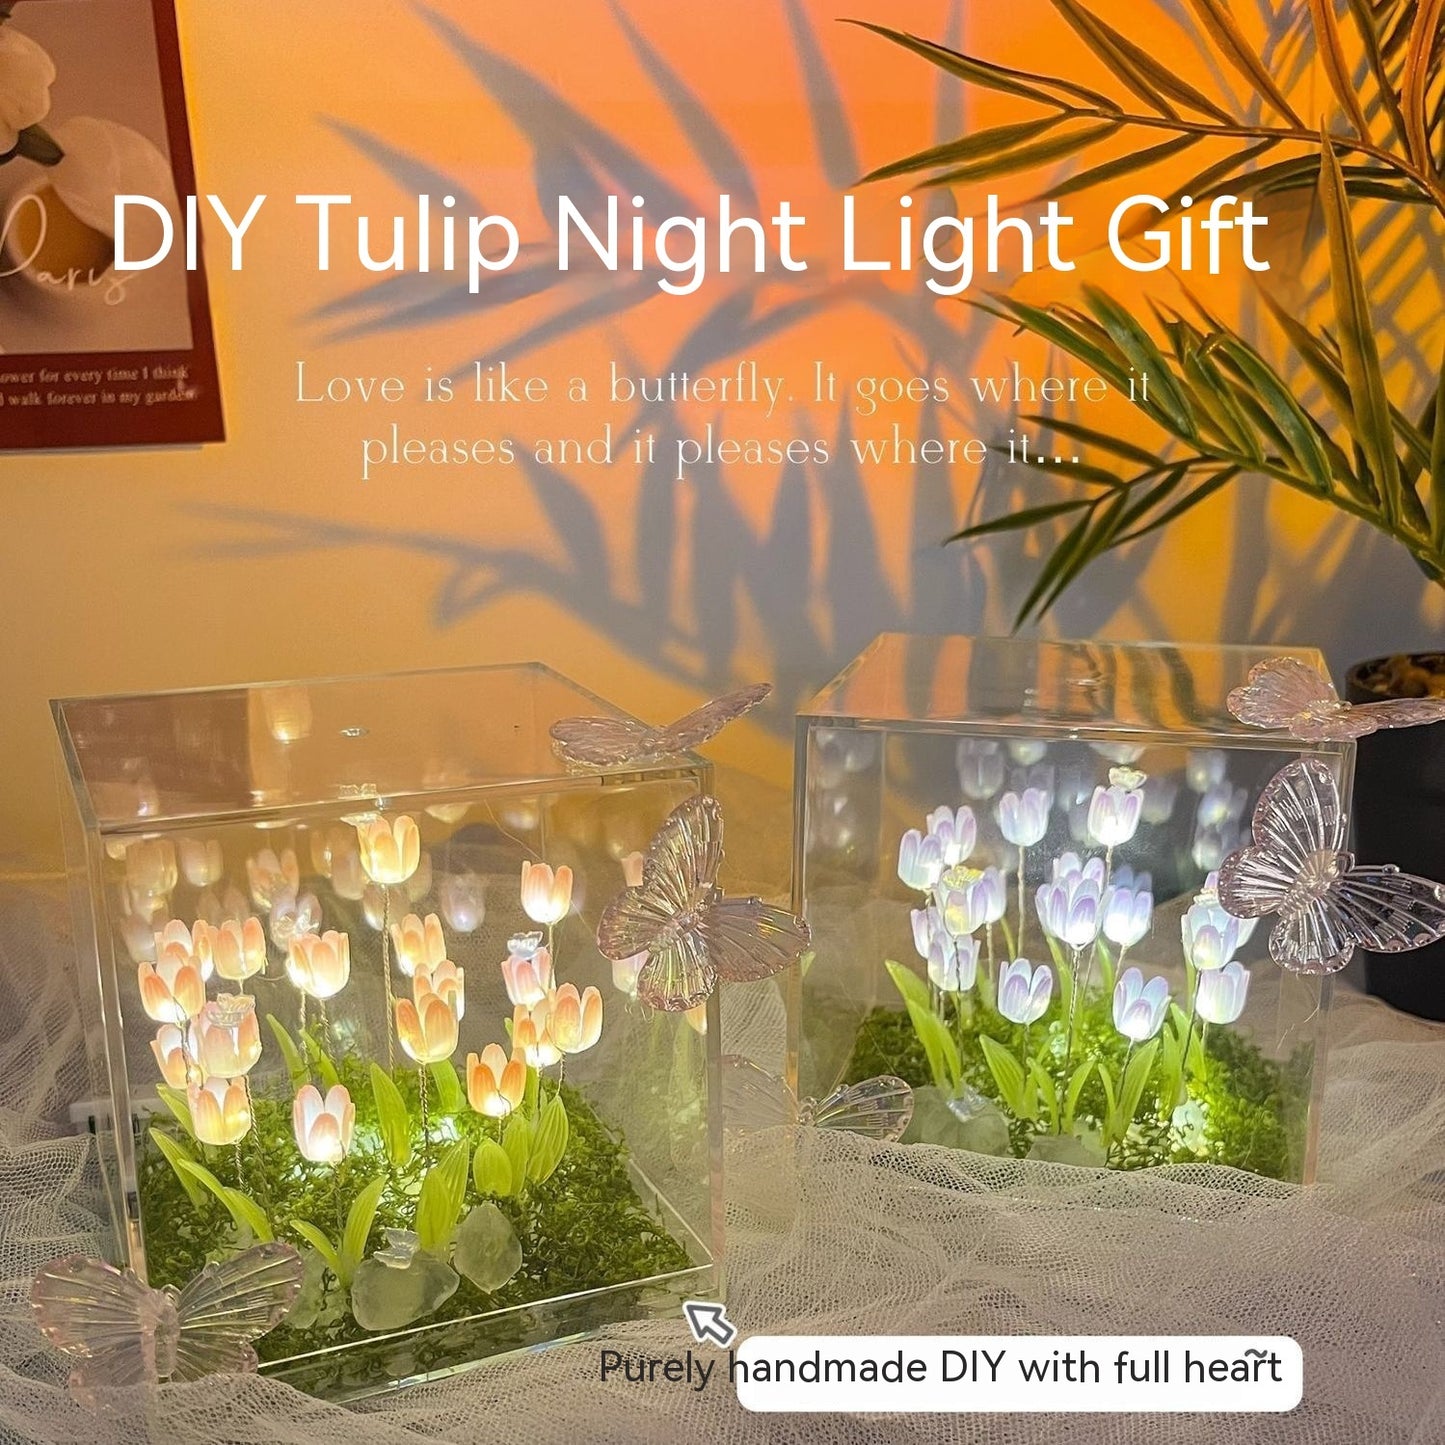 Tulip Night Lights